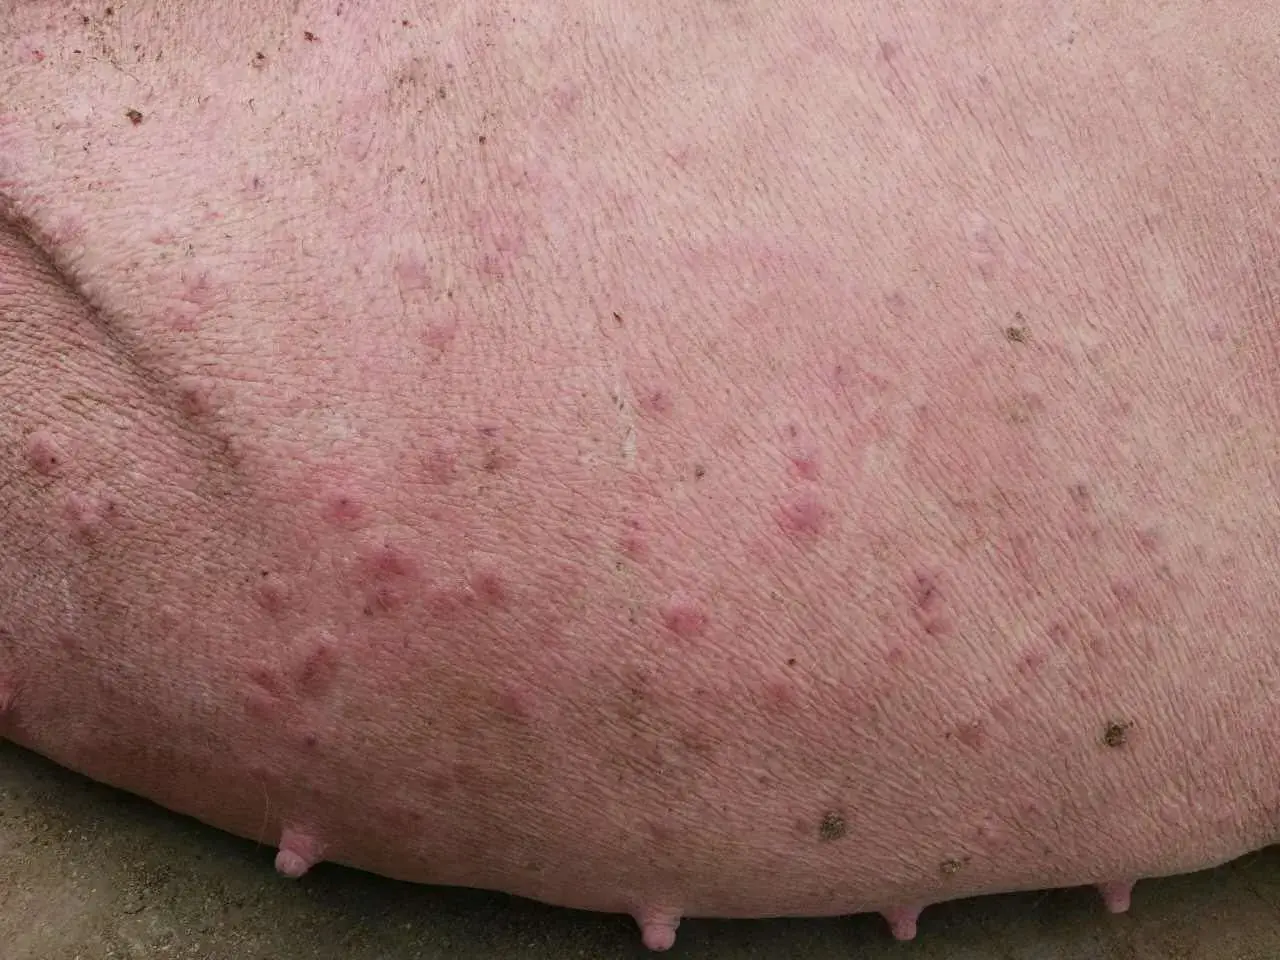 猪湿疹的病因:猪舍环境差,潮湿拥挤,通风不良;蚊虫叮咬或者化学药物